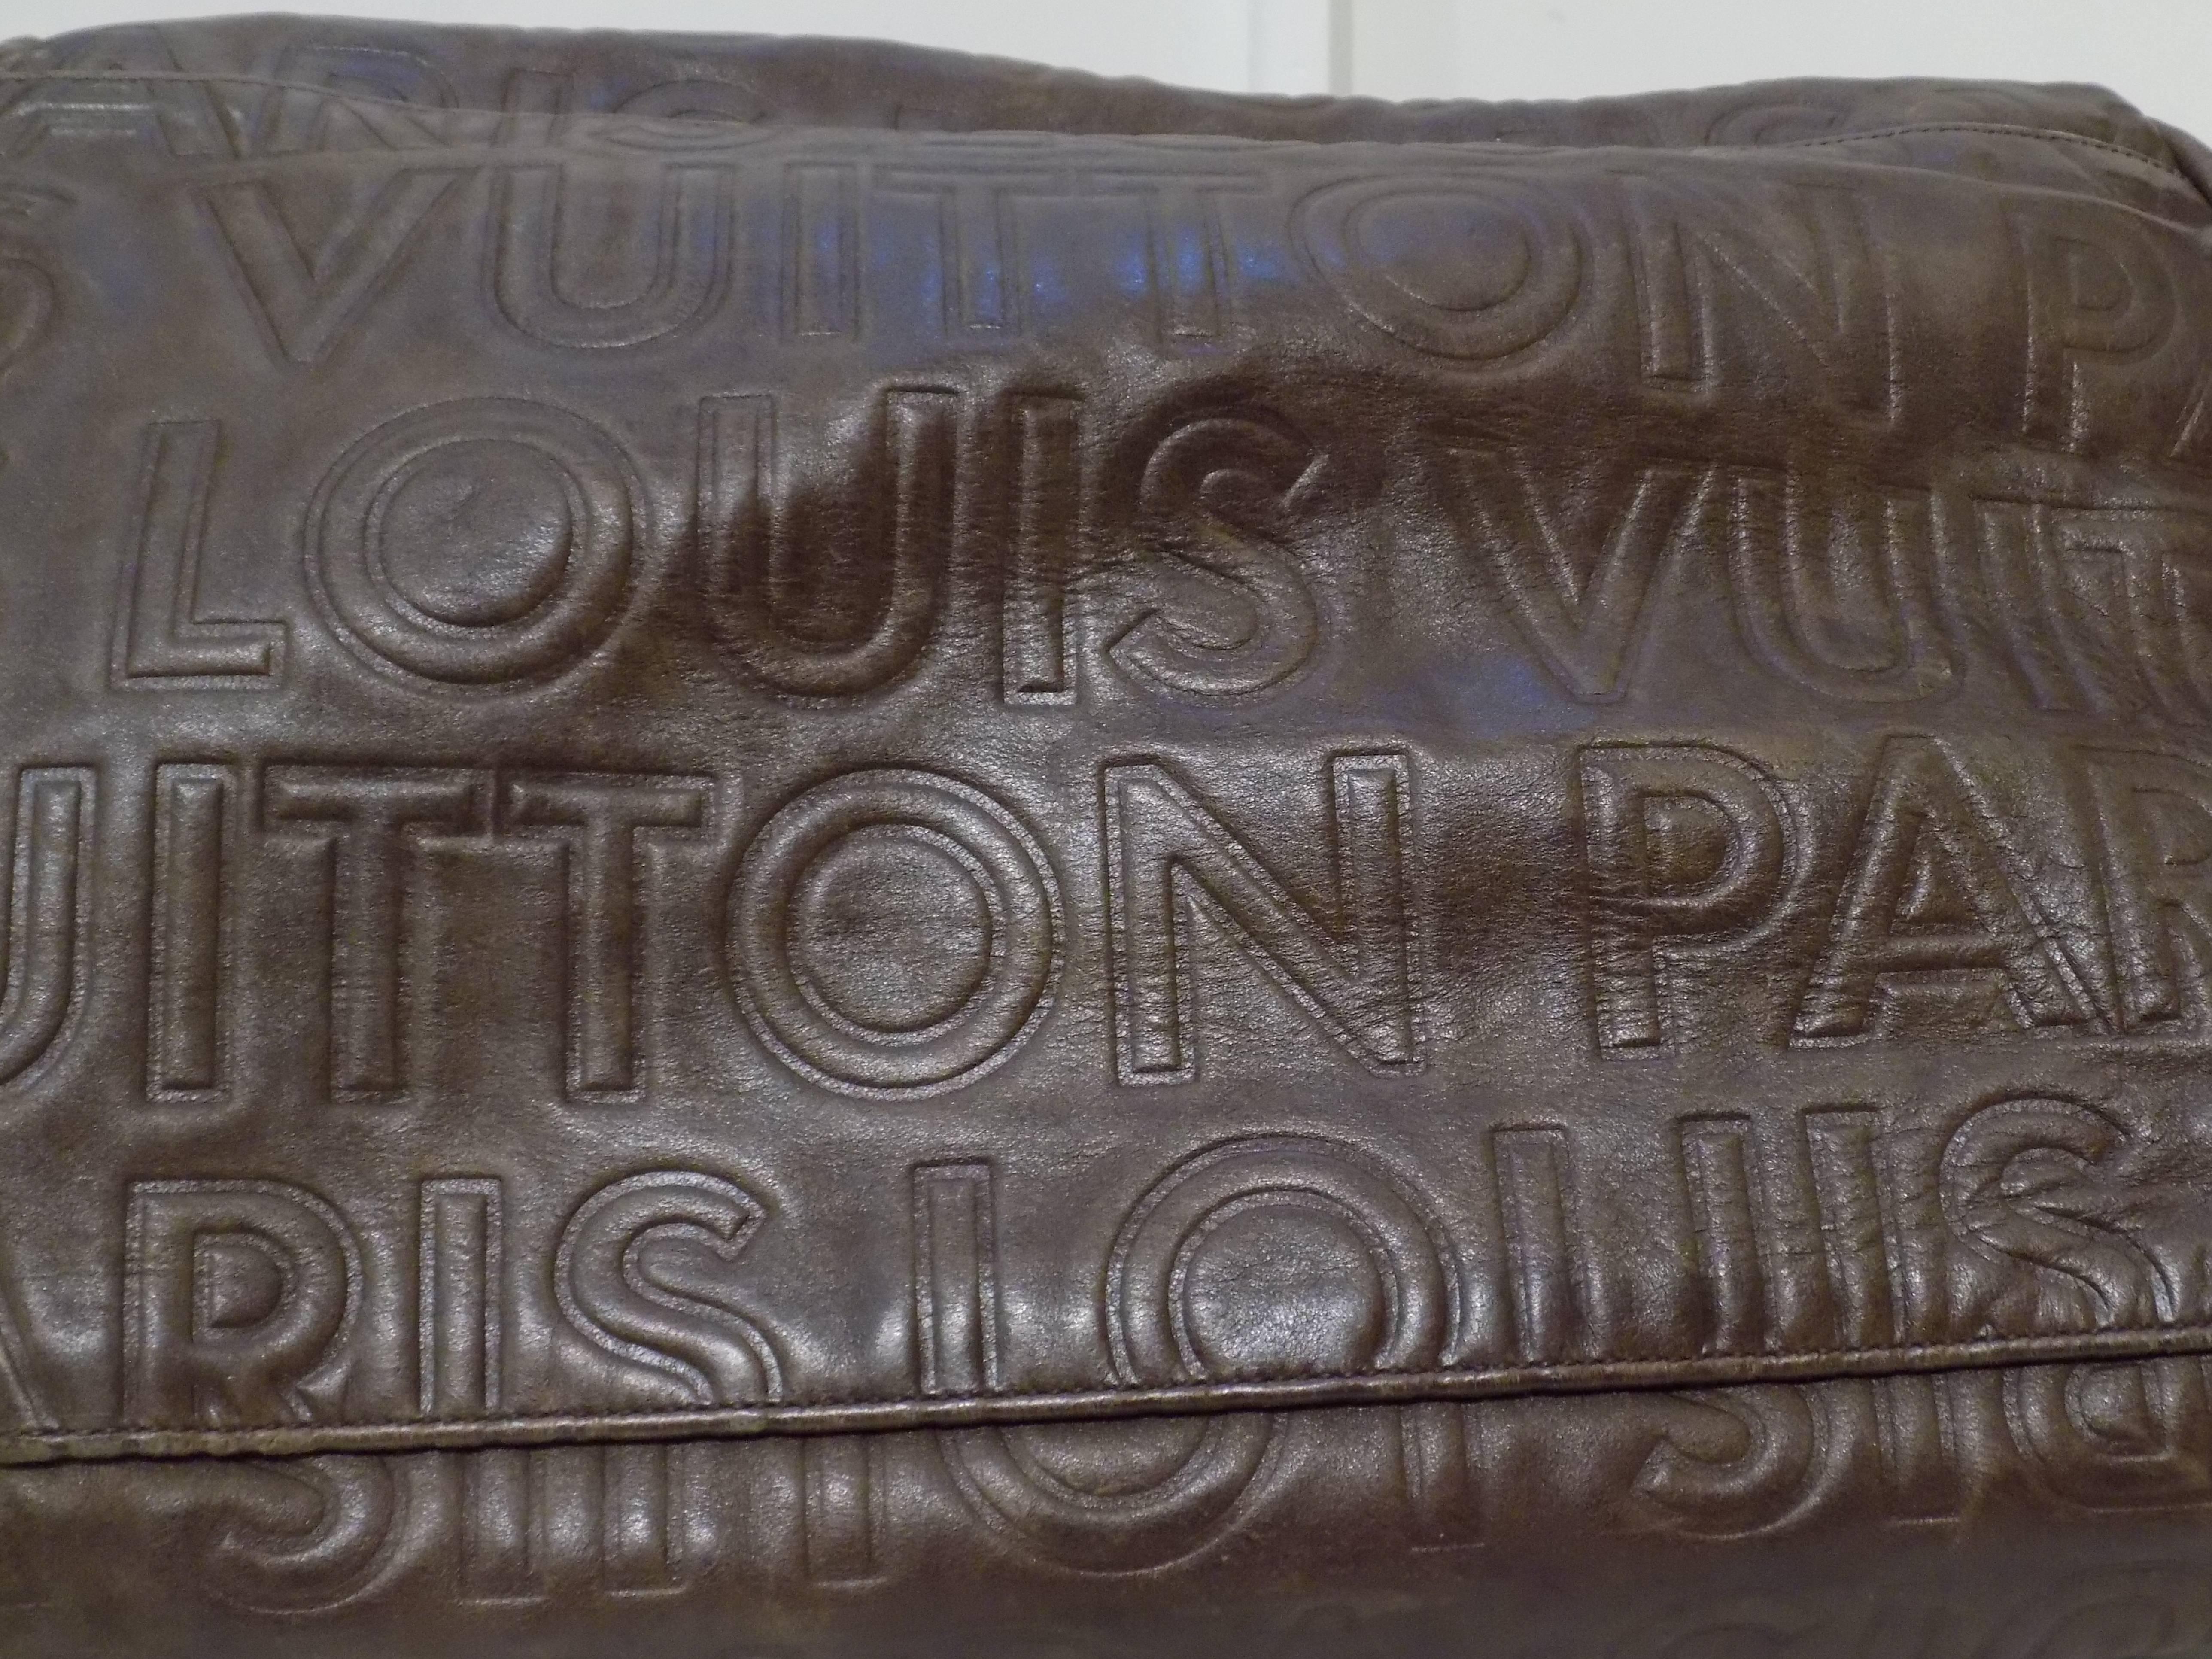 Louis Vuitton Brown Leather Bag
Shoulder bag total lenght 43 cm